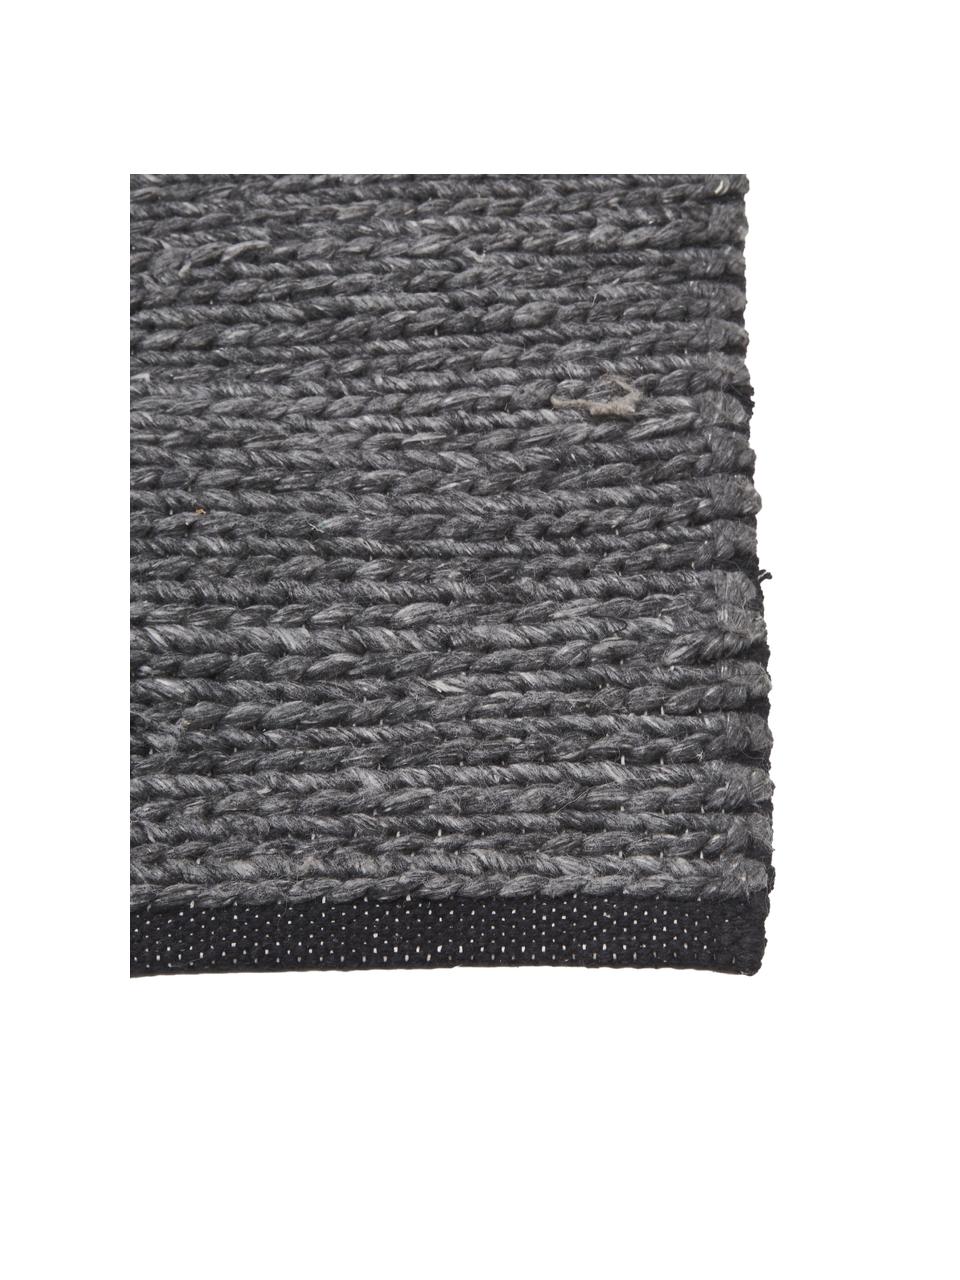 Alfombra artesanal de lana Uno, 60% lana, 40% poliéster

Las alfombras de lana se pueden aflojar durante las primeras semanas de uso, la pelusa se reduce con el uso diario, Gris oscuro jaspeado, An 160 x L 230 cm (Tamaño M)